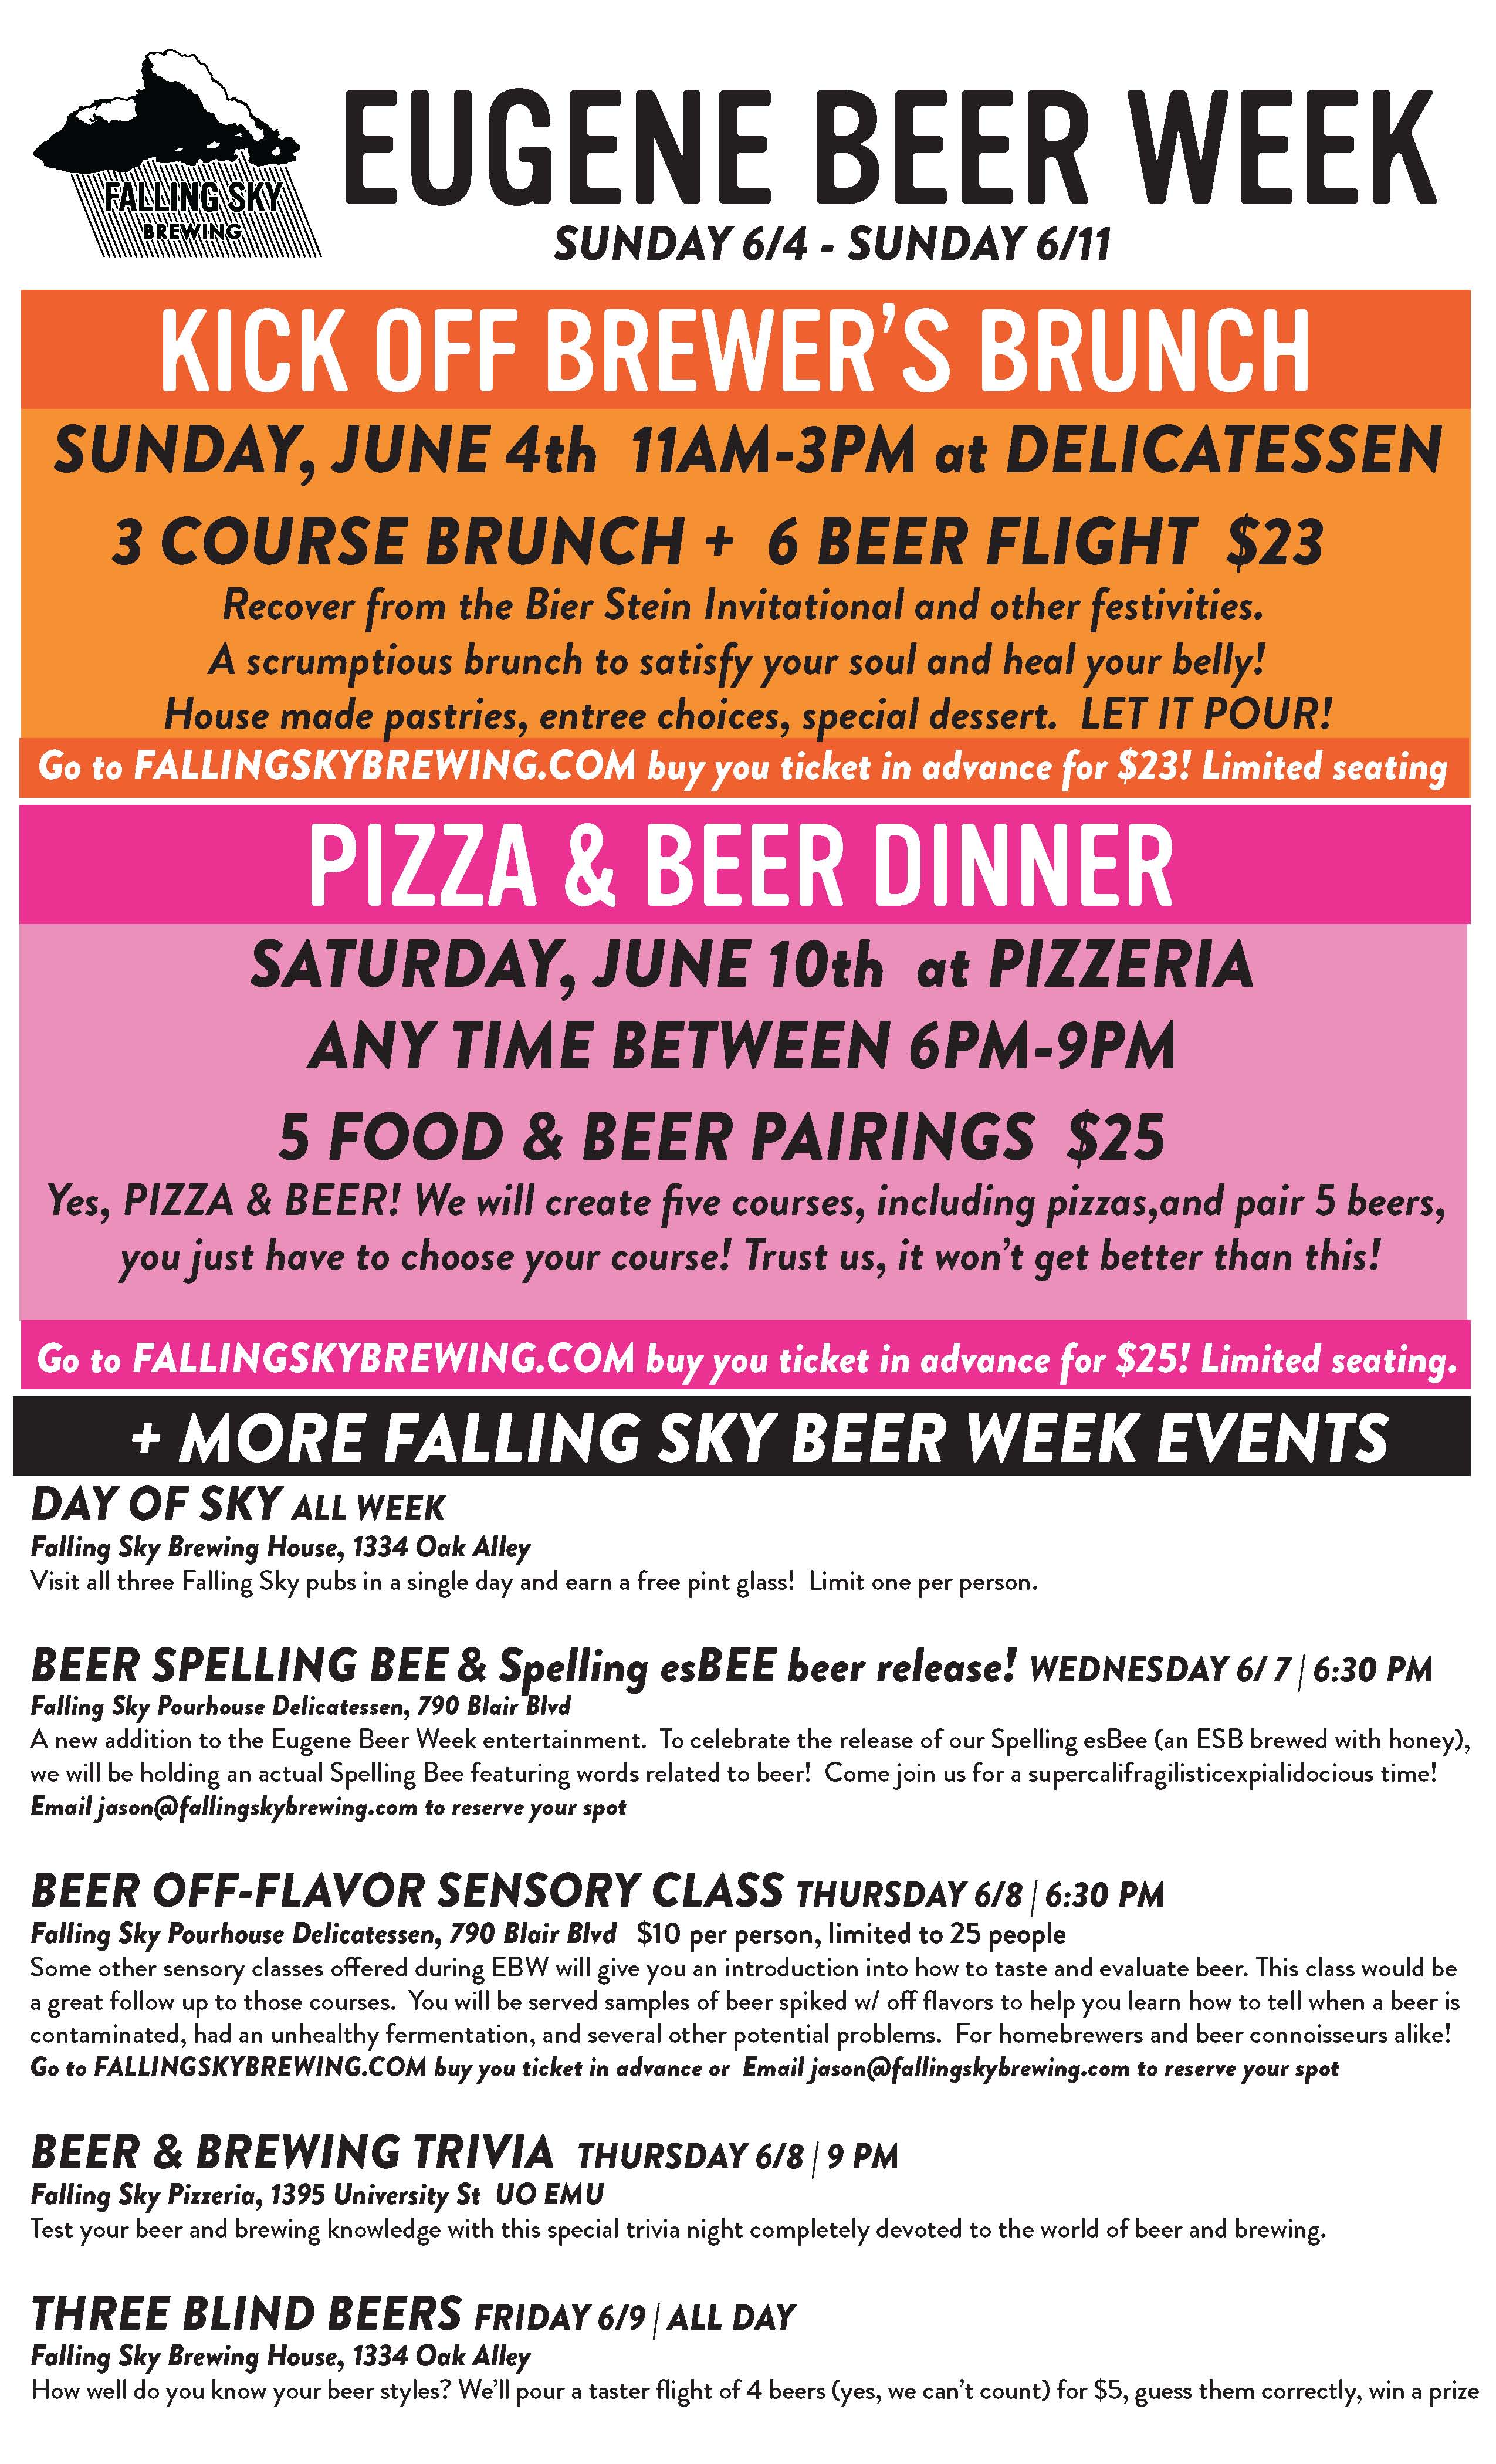 Falling Sky Brewing 2017 Eugene Beer Week Calendar of Events